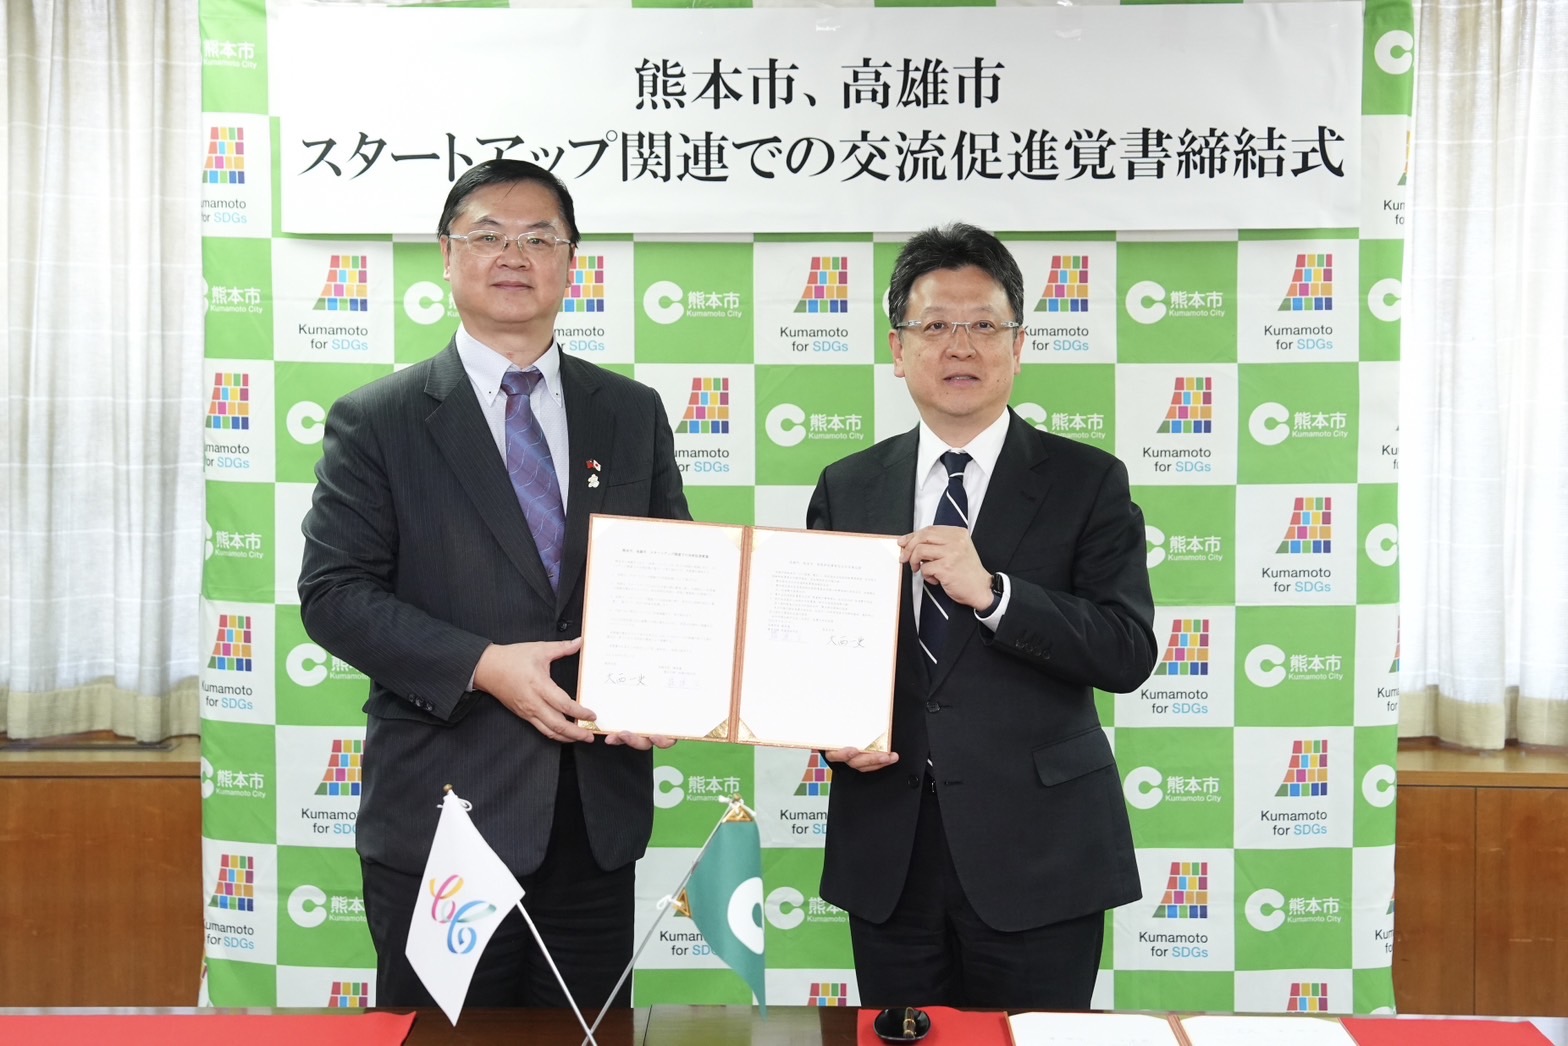 友好城市攜手！高雄與熊本市簽署新創事業交流合作備忘錄 發展經濟戰略夥伴關係